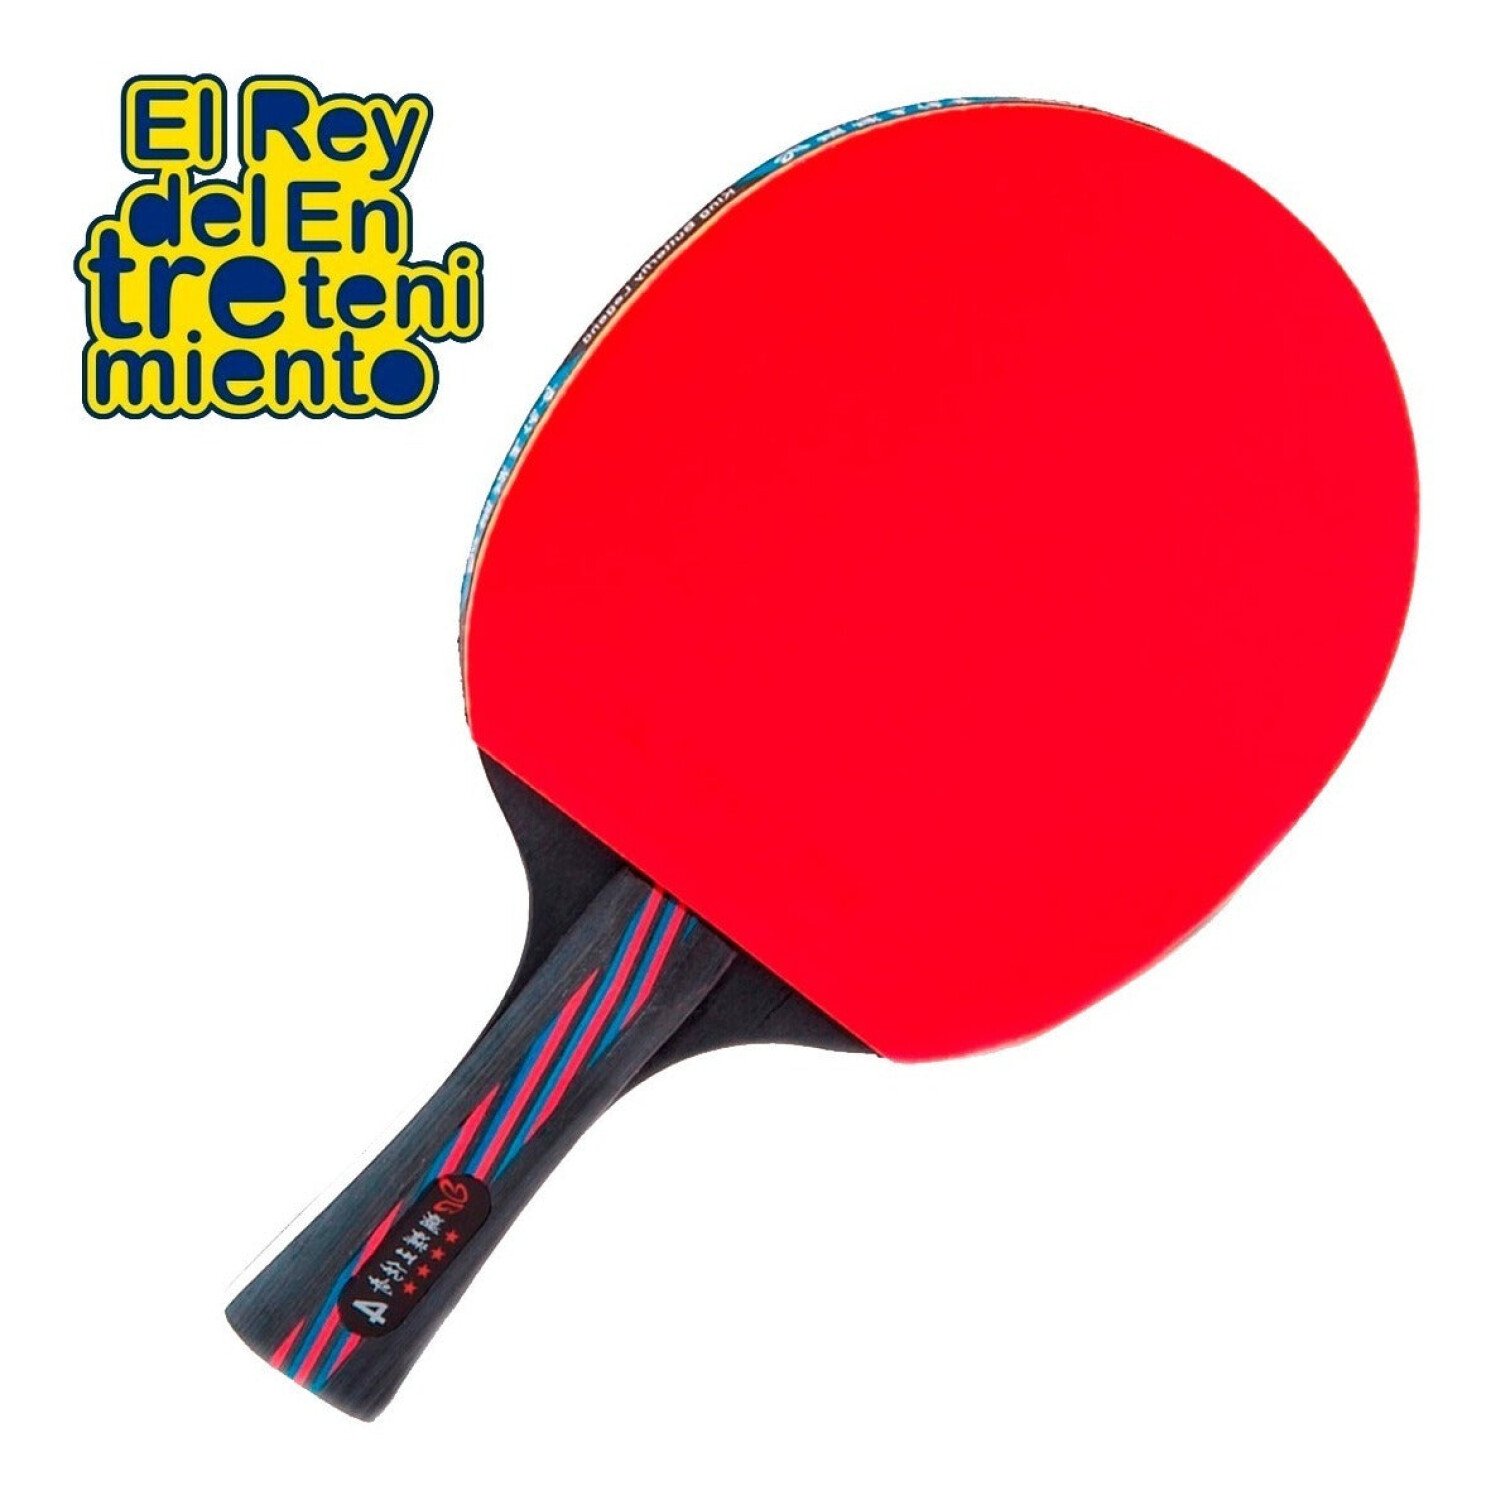 Set Ping Pong 2 Paletas +3 Pelotas + Red + Soportes — El Rey del  entretenimiento